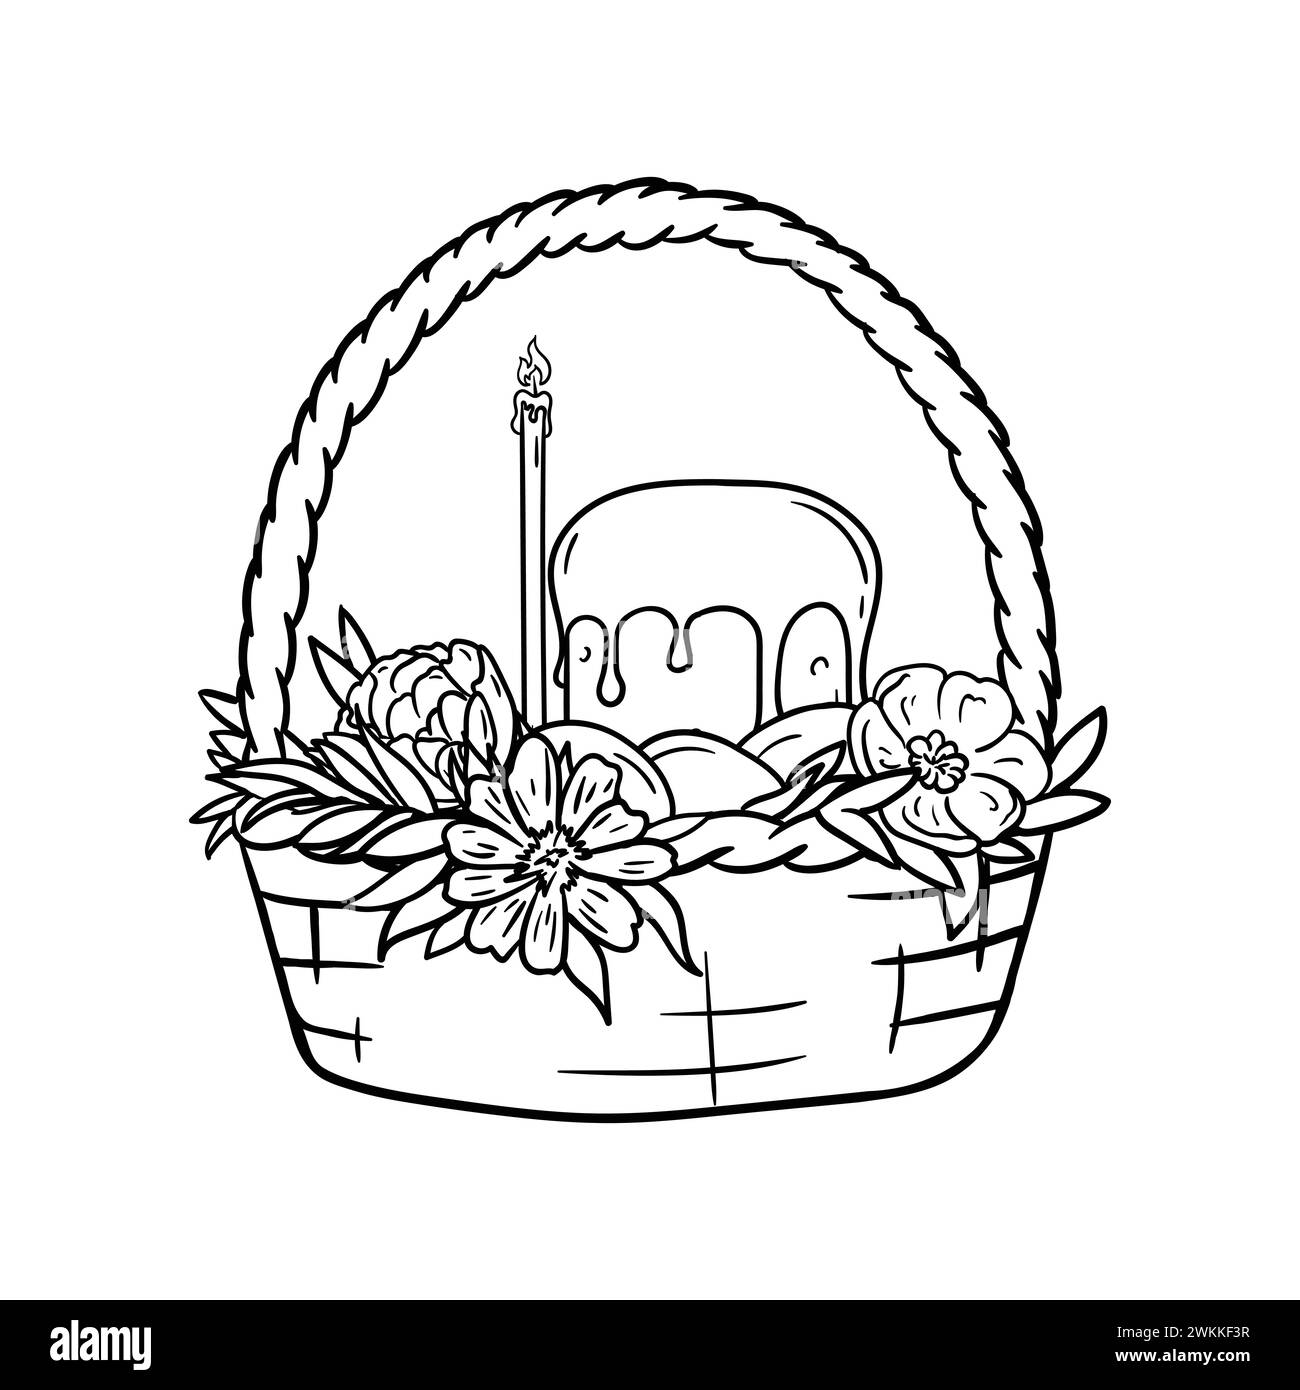 Pagina da colorare con cestino, torta di Pasqua, candela della chiesa, fiori e uova. Illustrazione vettoriale in bianco e nero. Illustrazione Vettoriale